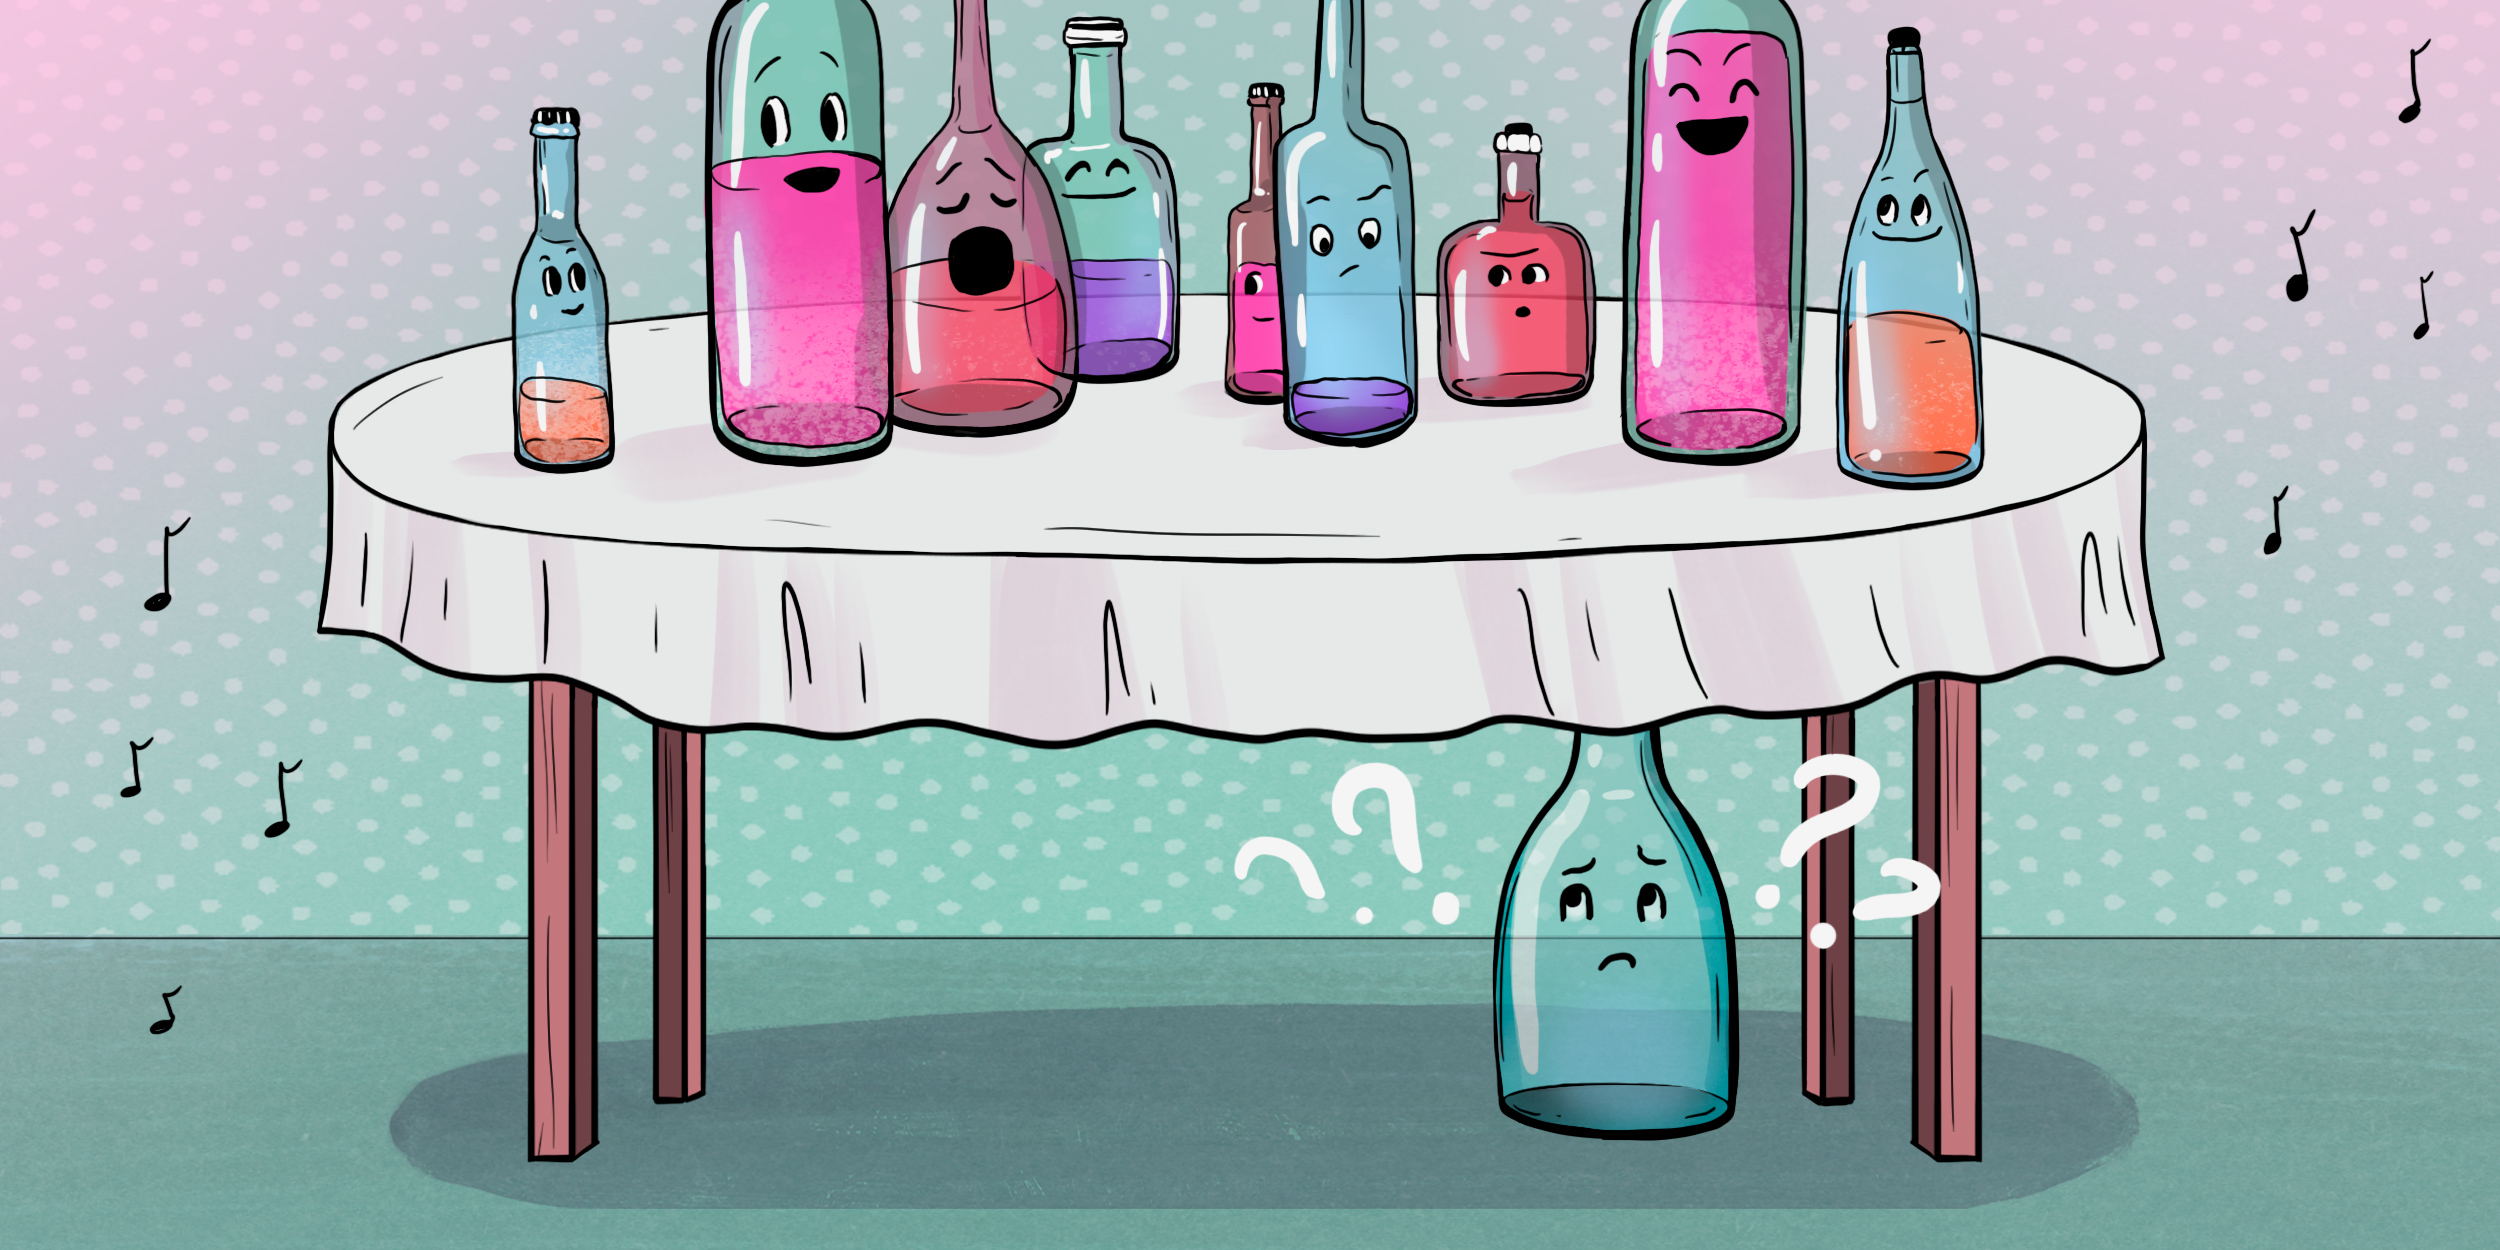 Почему нельзя оставлять пустые бутылки на столе: вред для здоровья и причины порчи интерьера